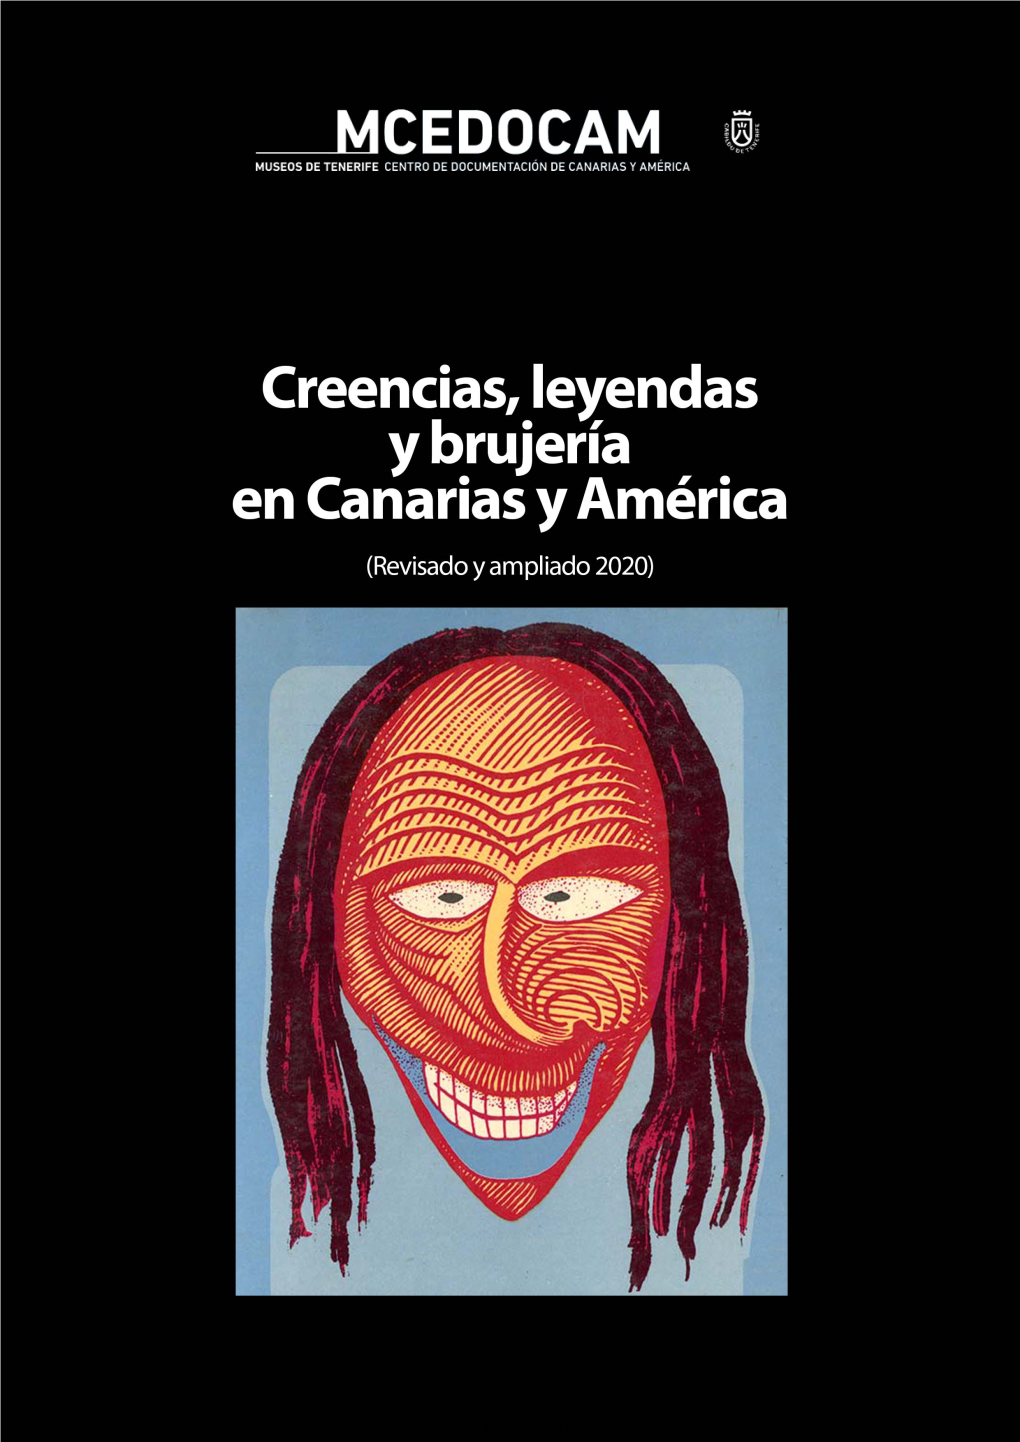 Monográfico Del Centro De Documentación De Canarias Y América (CEDOCAM)